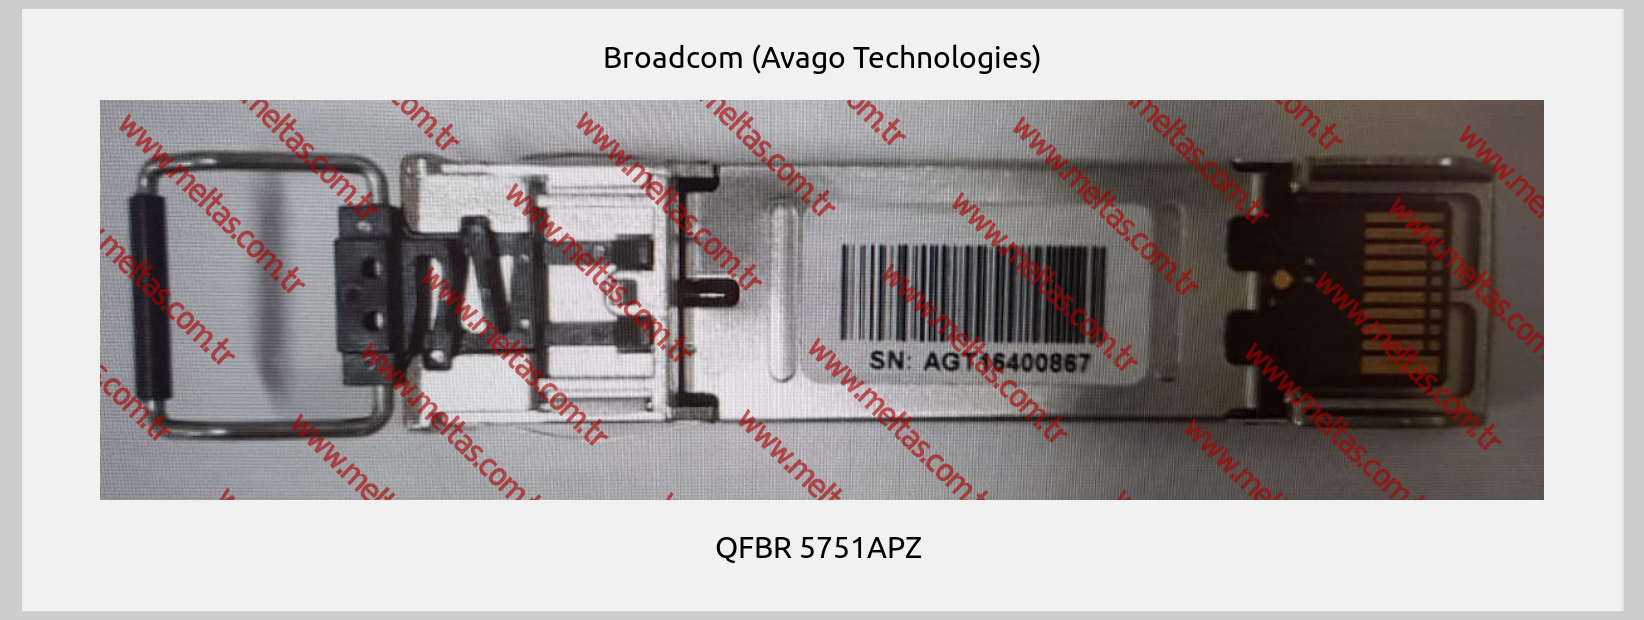 Broadcom (Avago Technologies)-QFBR 5751APZ 